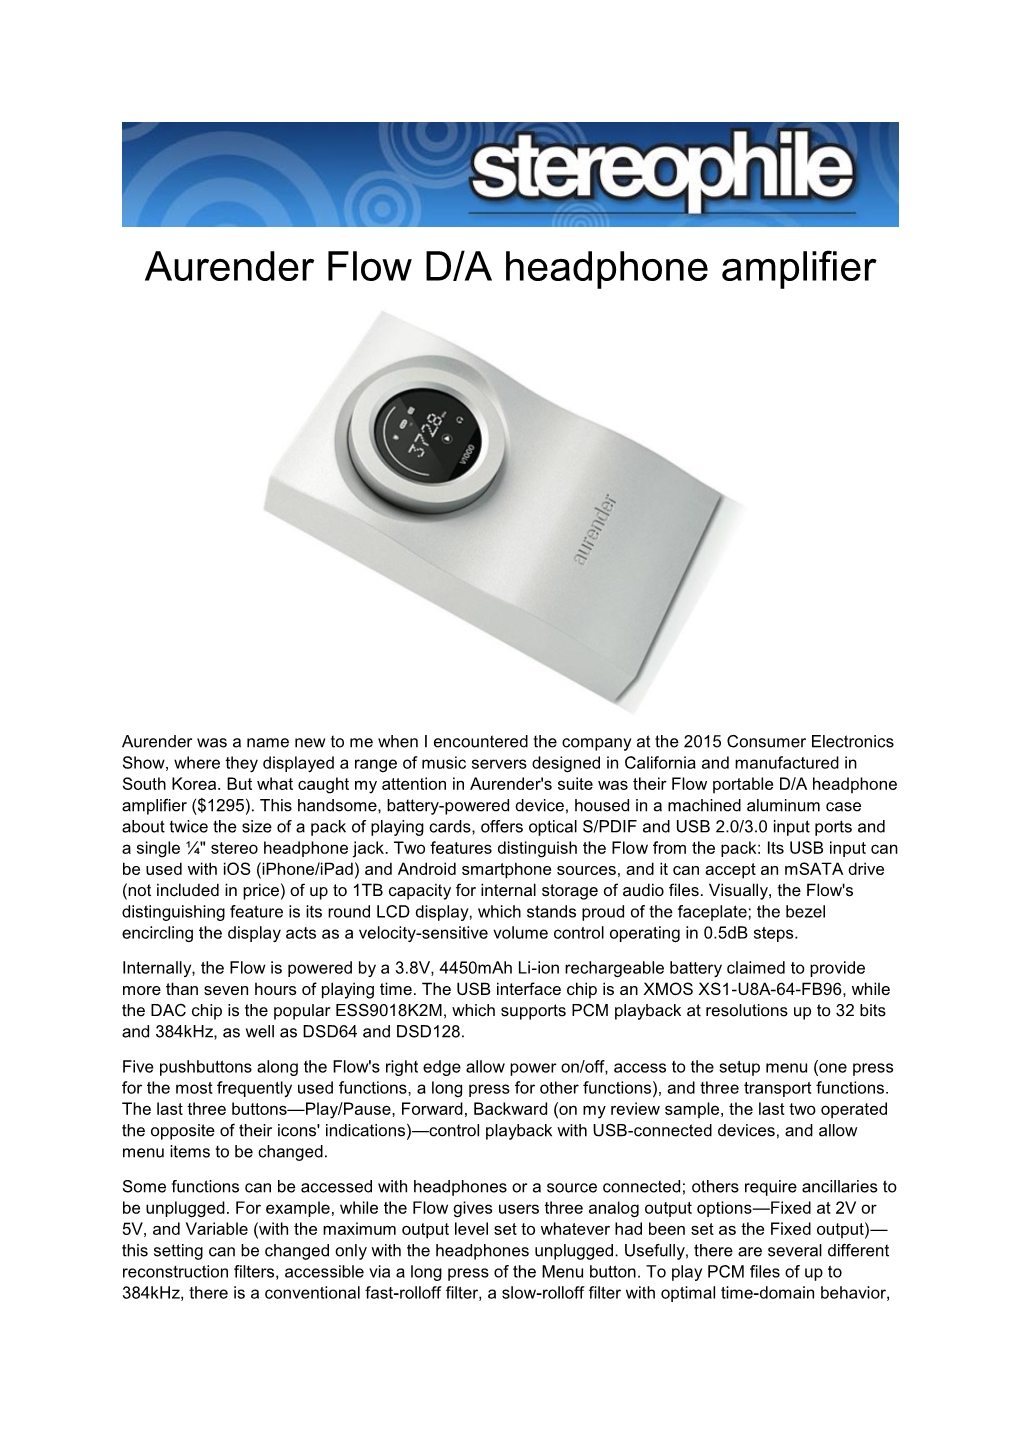 Aurender Flow D/A Headphone Amplifier